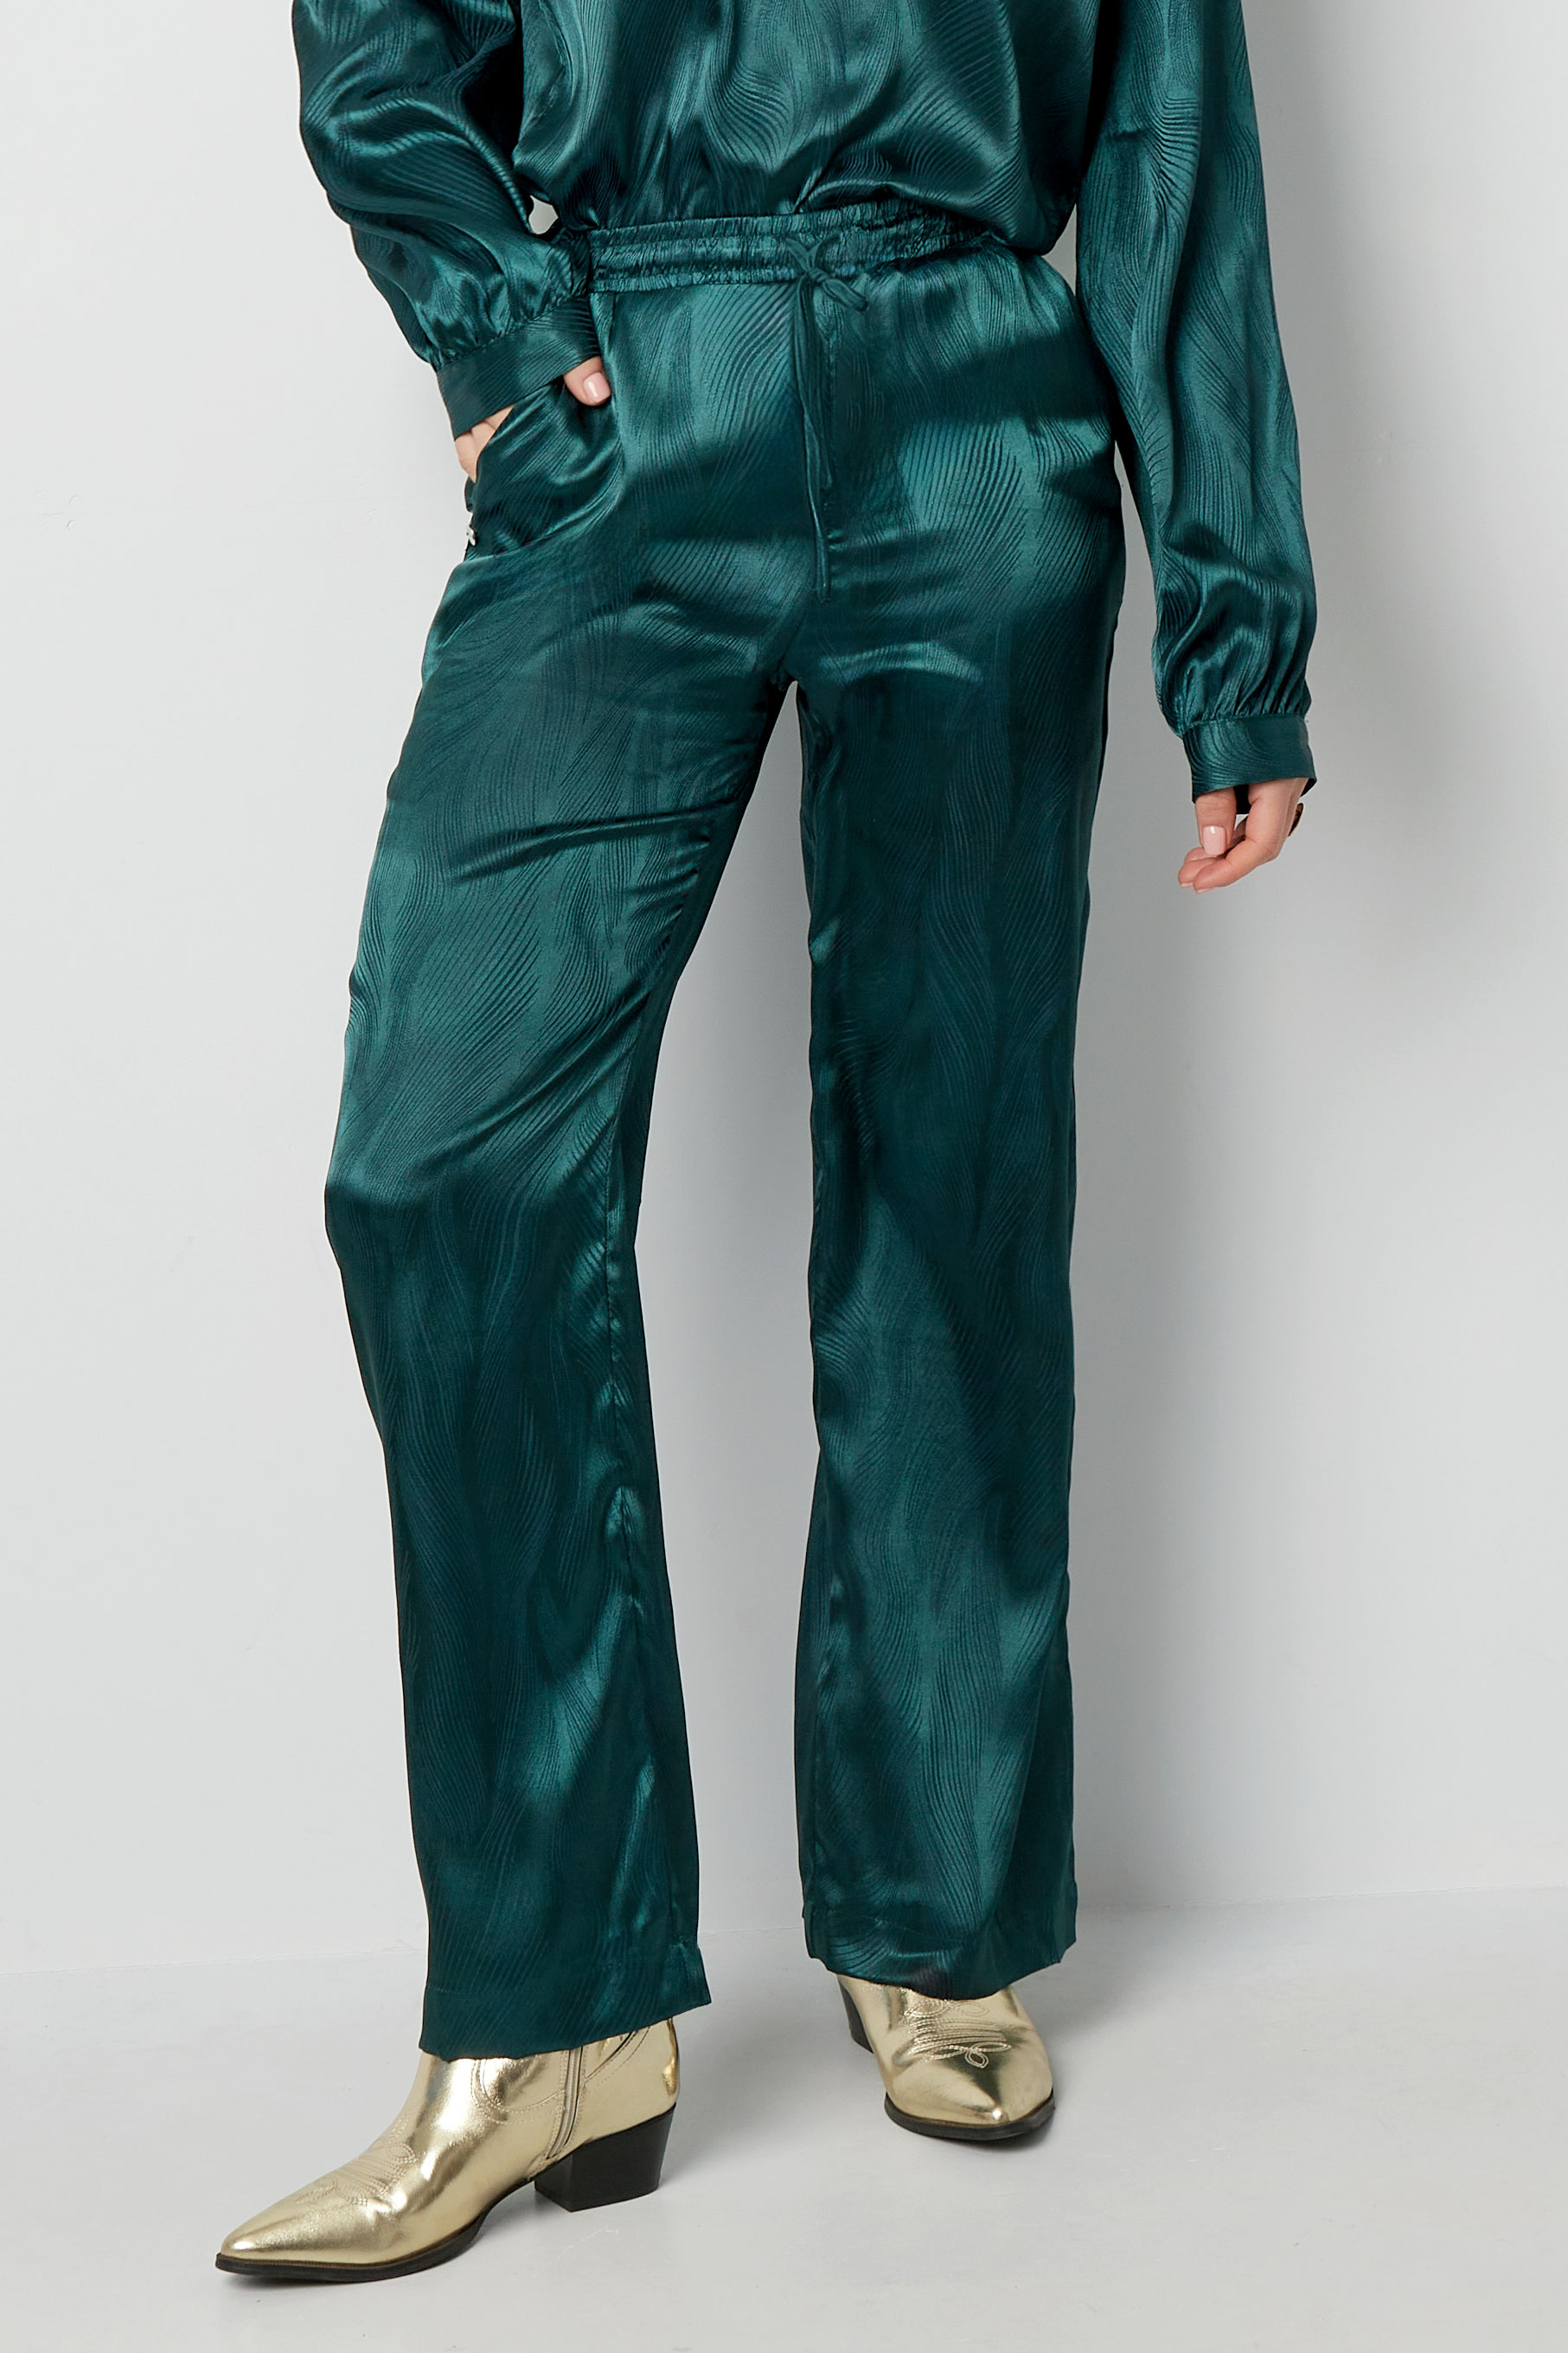 Satijnen broek met print - groen Afbeelding2